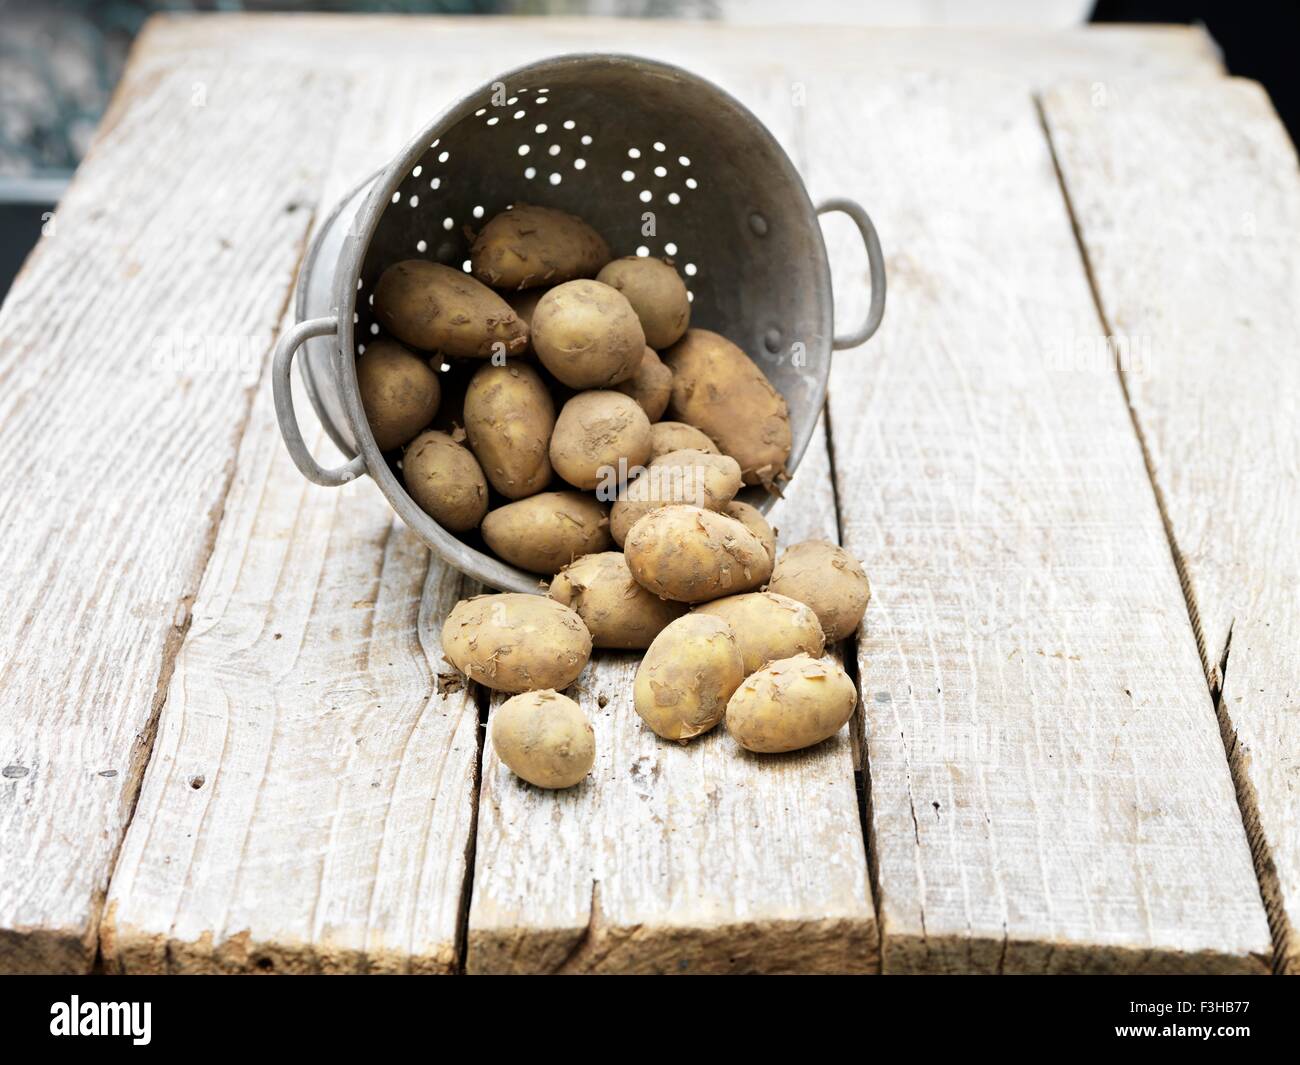 Nature morte de pommes de terre Jersey Royal dans une passoire sur table en bois Banque D'Images